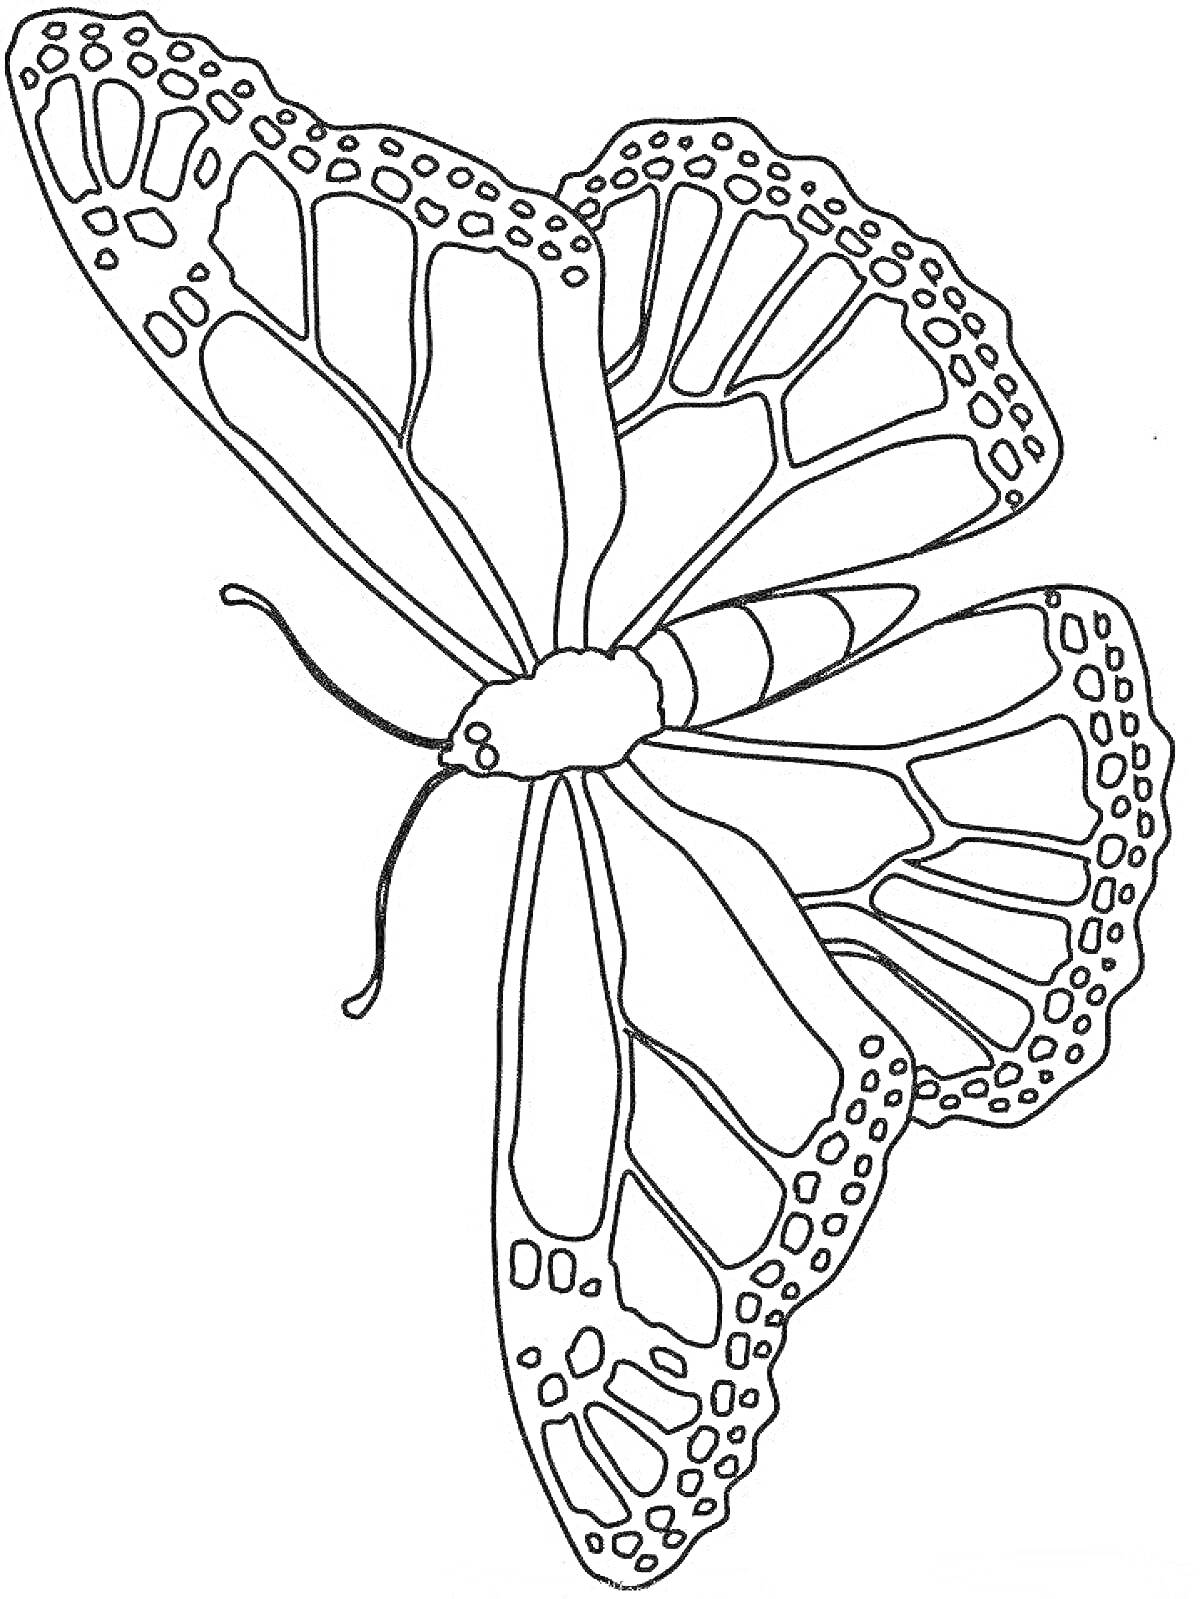 Раскраска Одинокая бабочка с узорчатыми крыльями